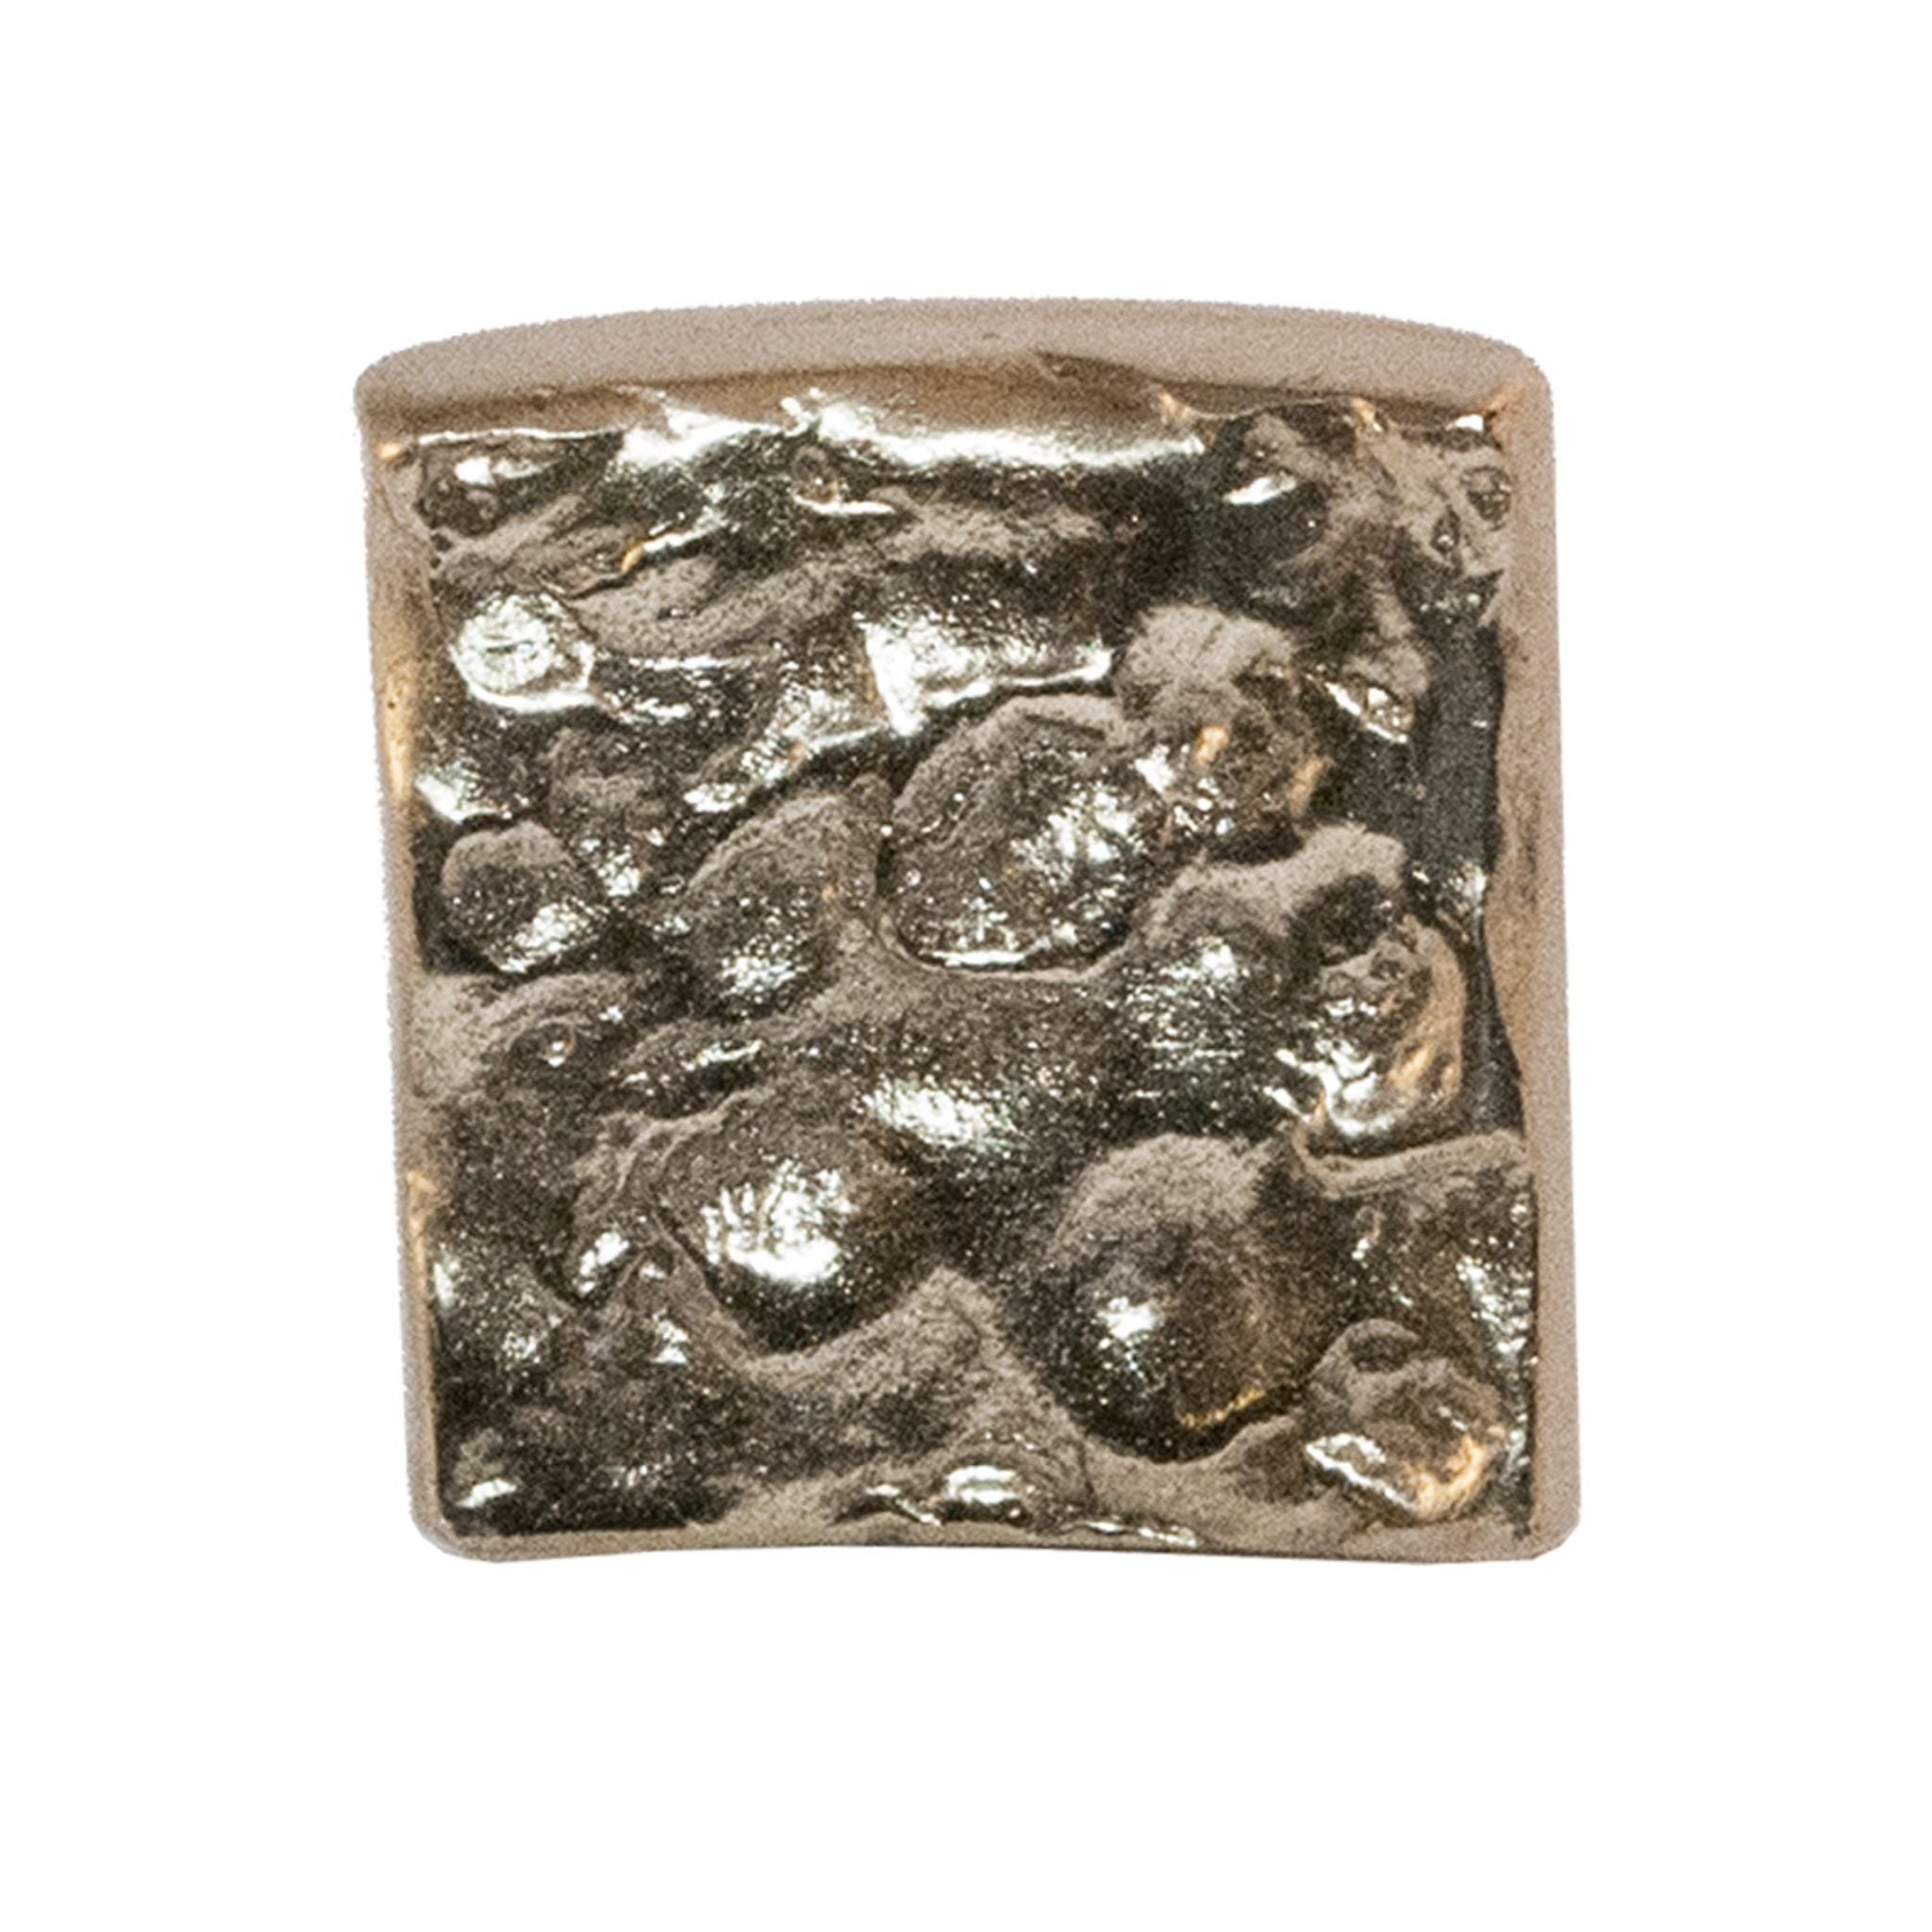 Contemporanea brass lava texture knob - ilbronzetto